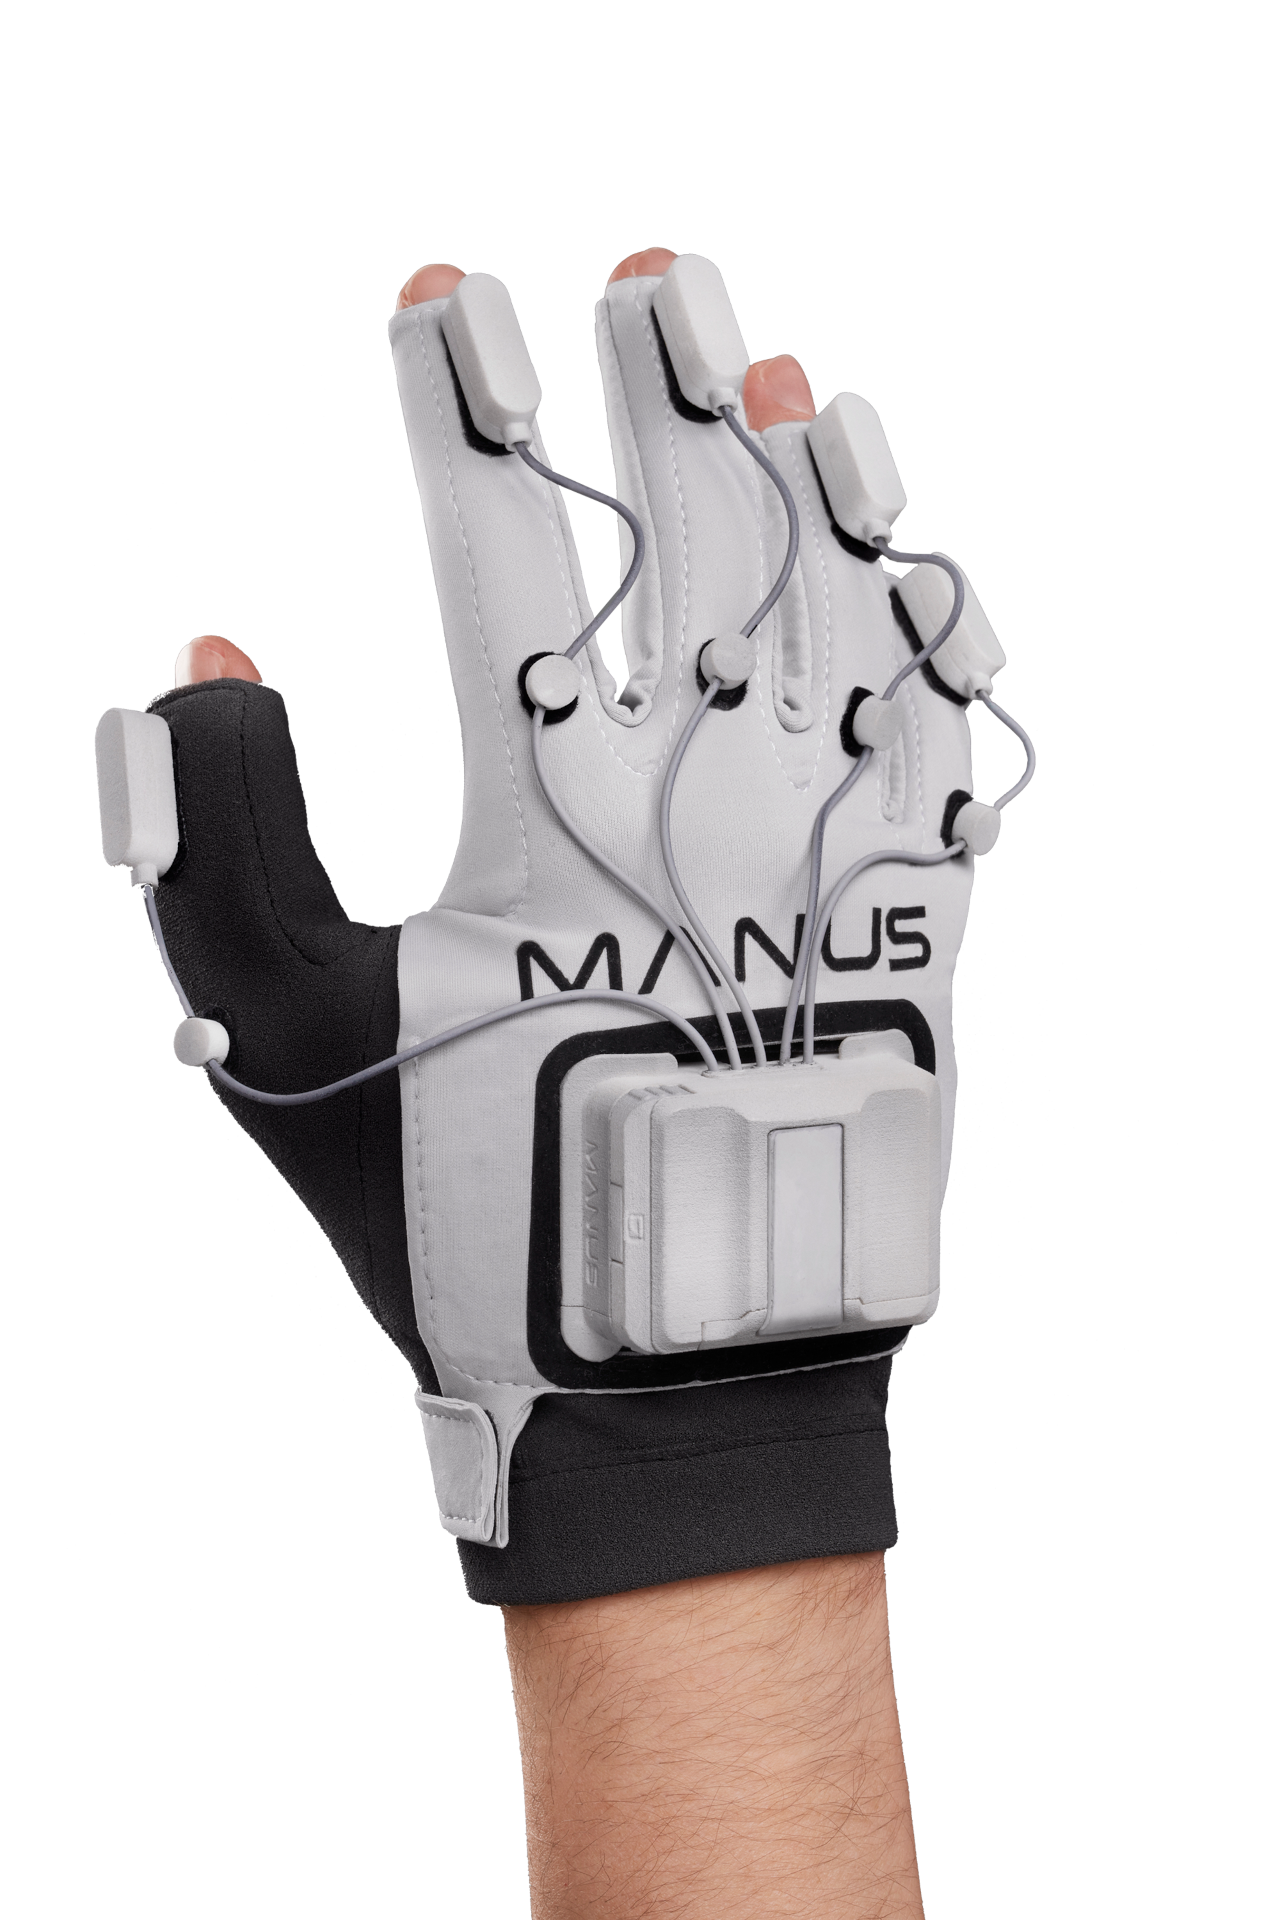 Manus VR Prime 2 Haptic